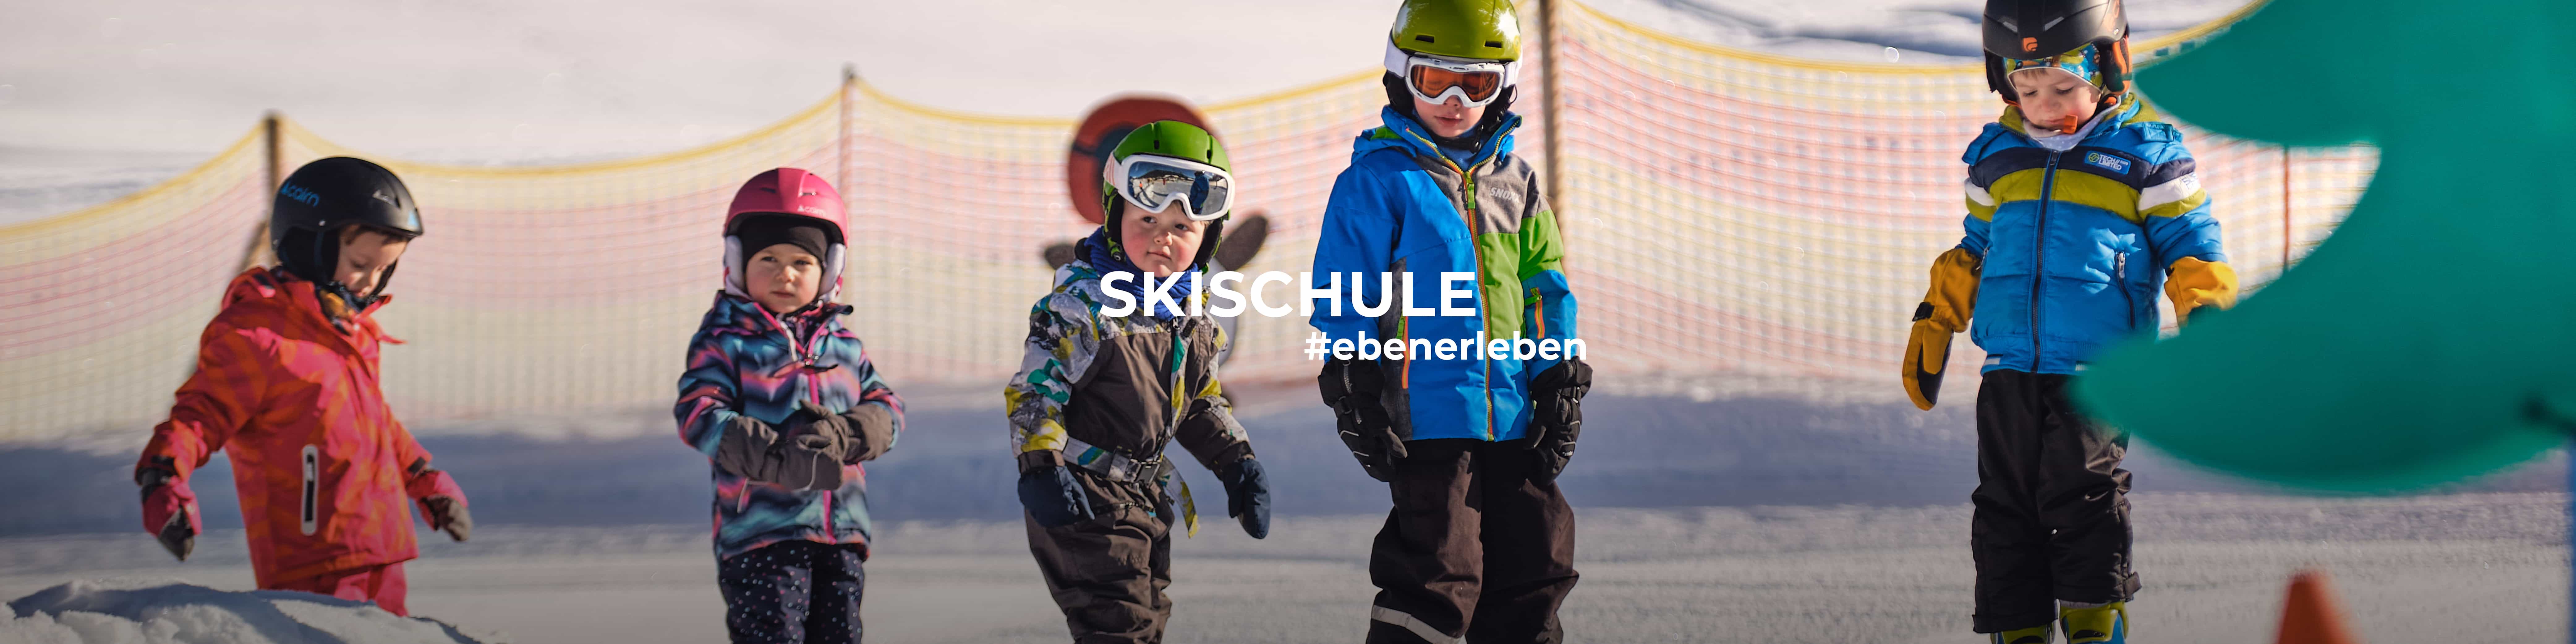 Skifahren lernen wie die Profis in der Kinderskischule Eben